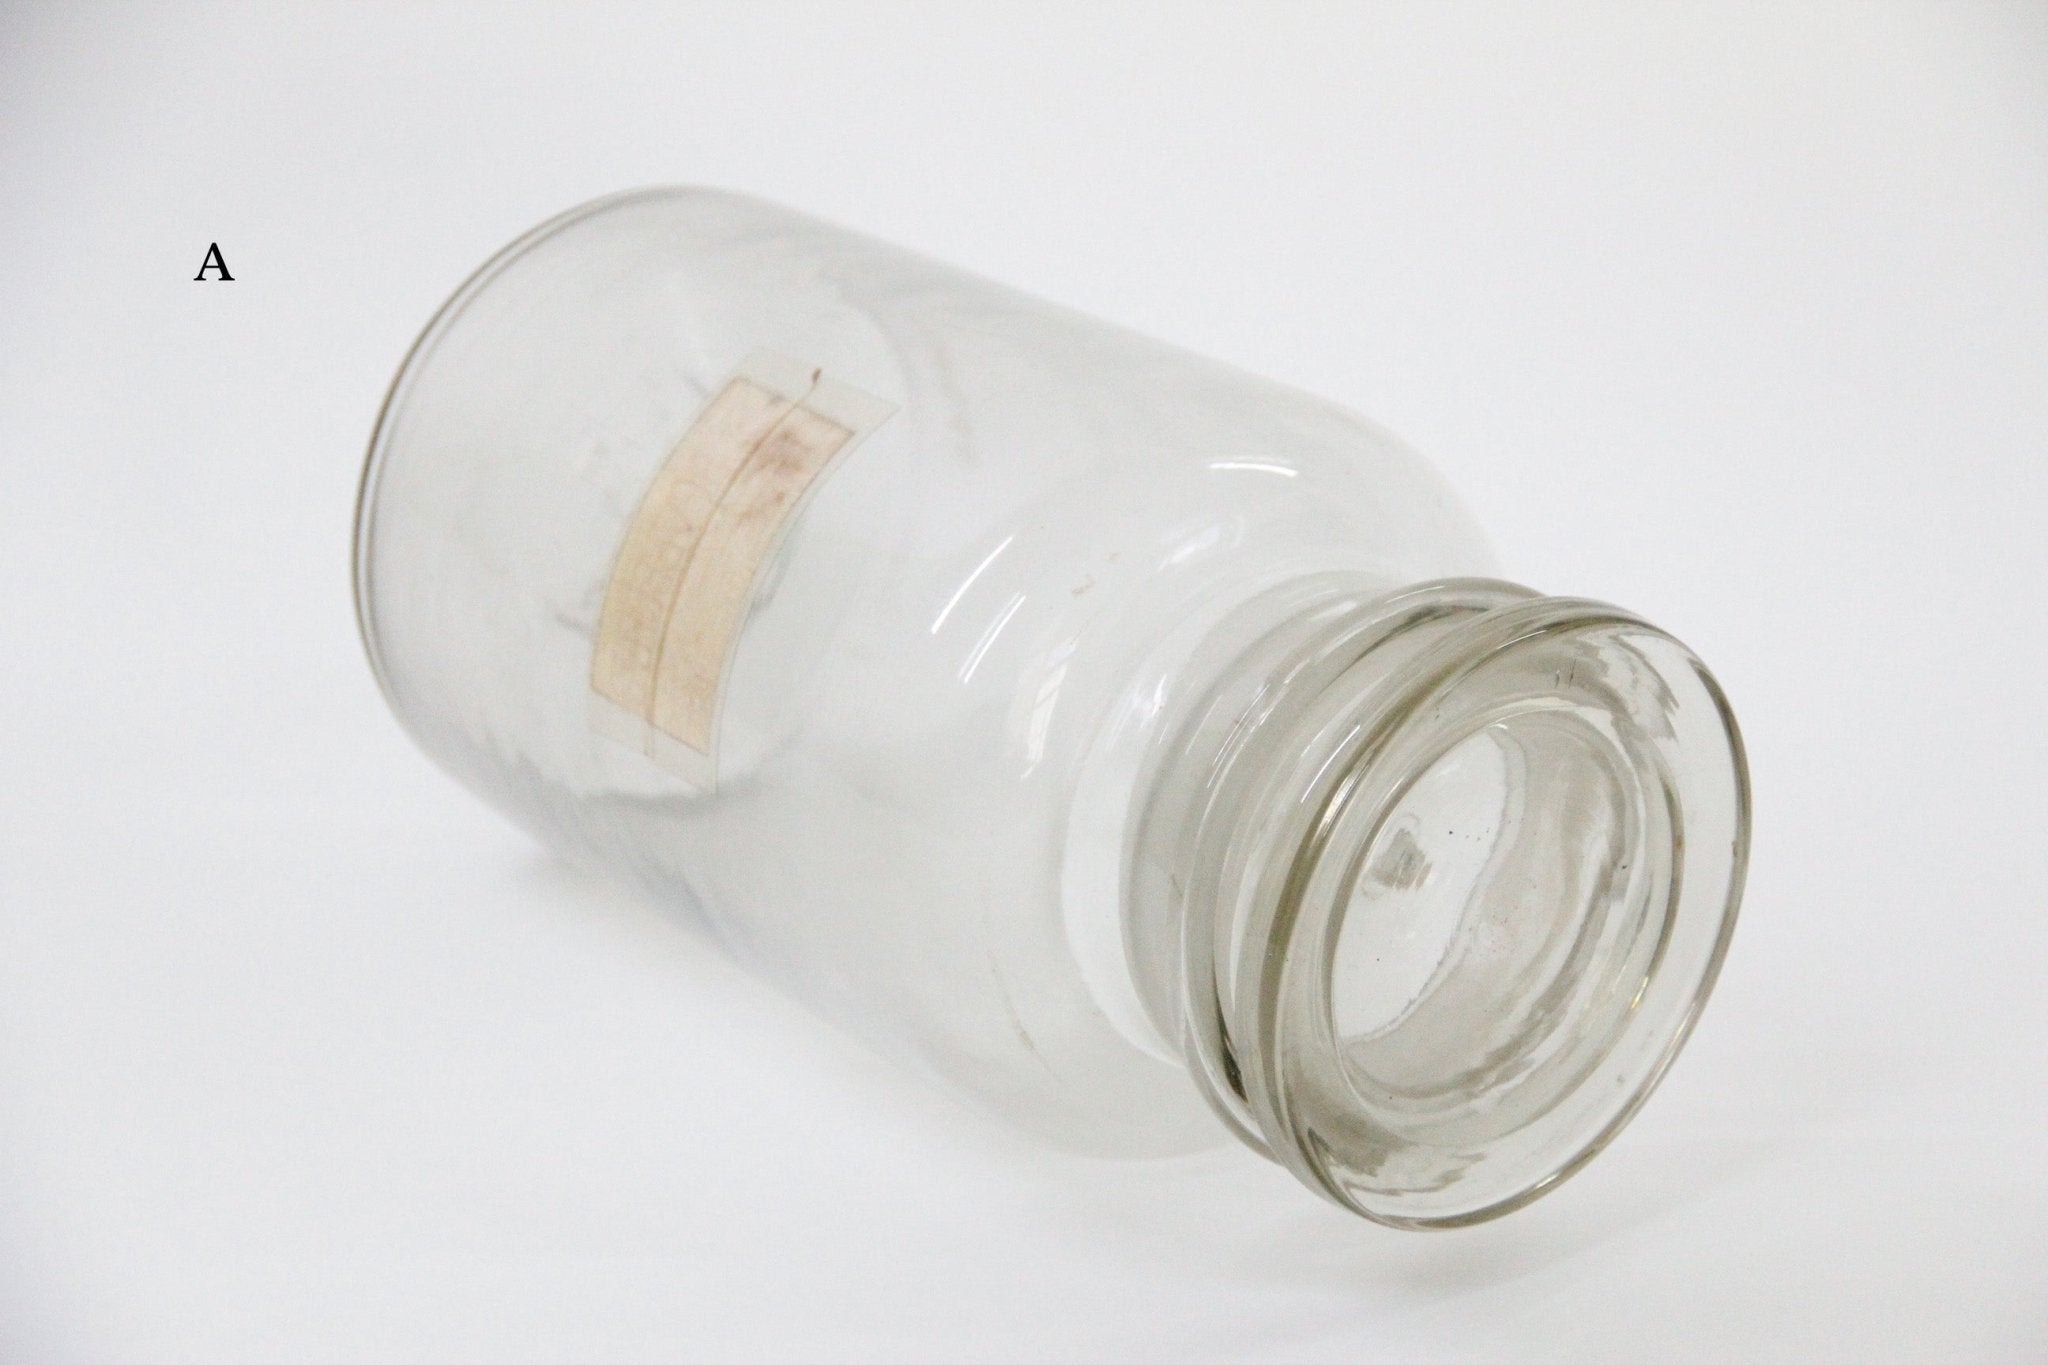 Antique European Apothecary Bottle | Pharmacy Jar - Debra Hall Lifestyle